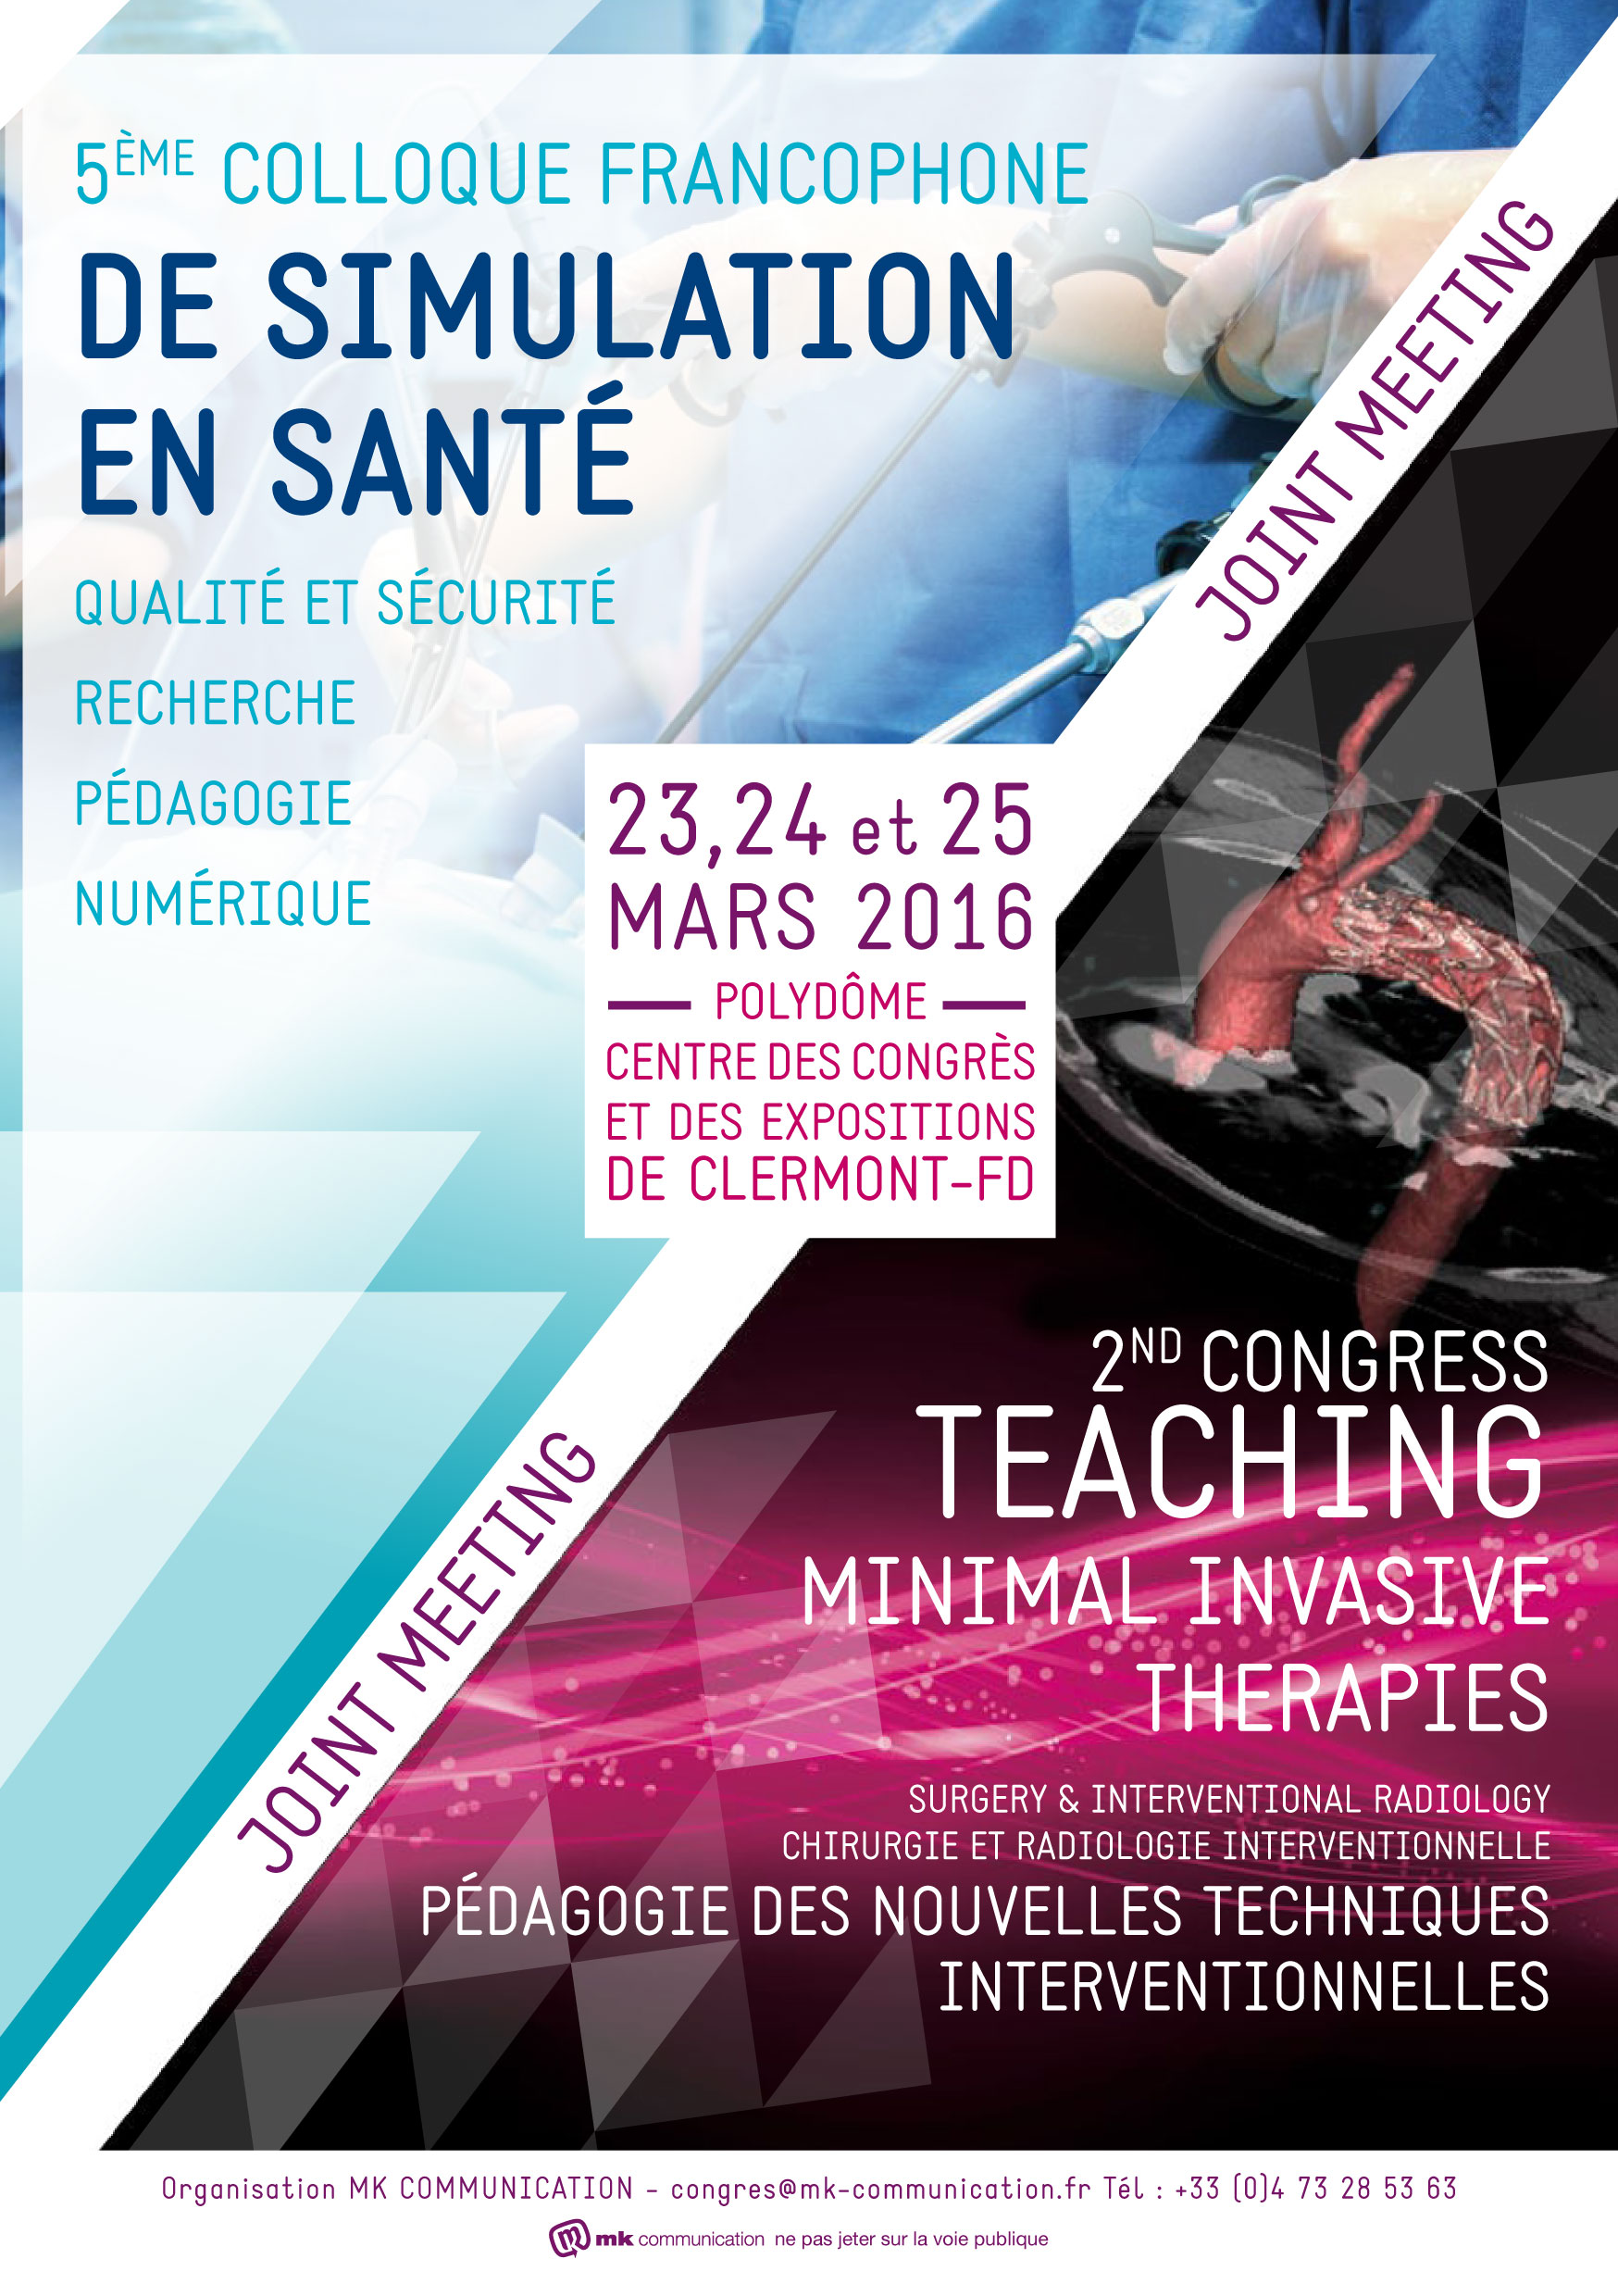 Colloque francophone de Simulation en Santé 2016